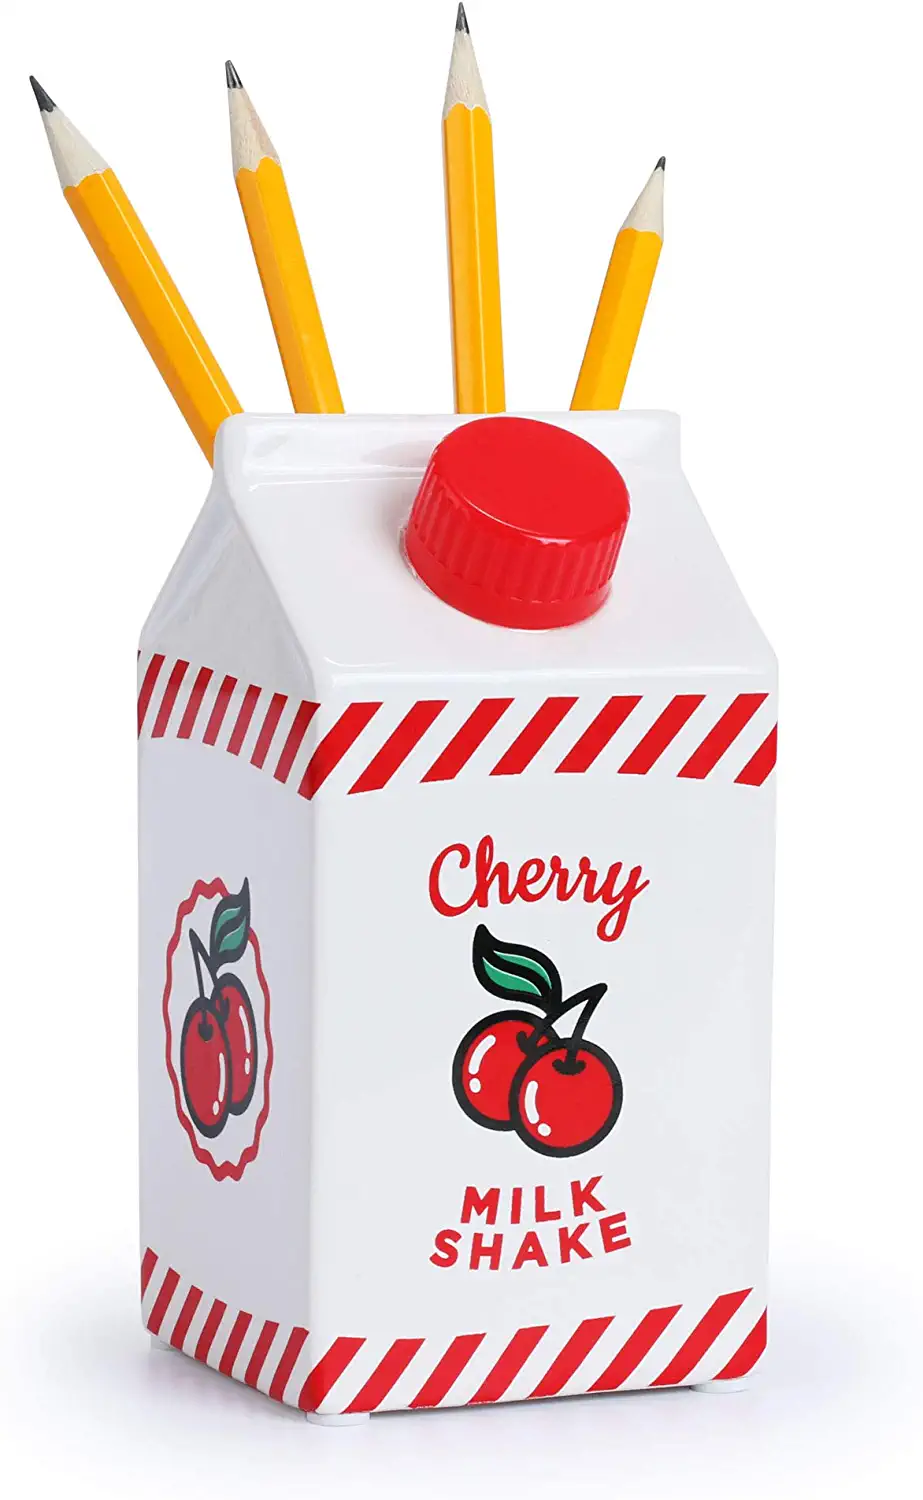 Cherry Milk Shake Pen Pot | Retro Pen Holder